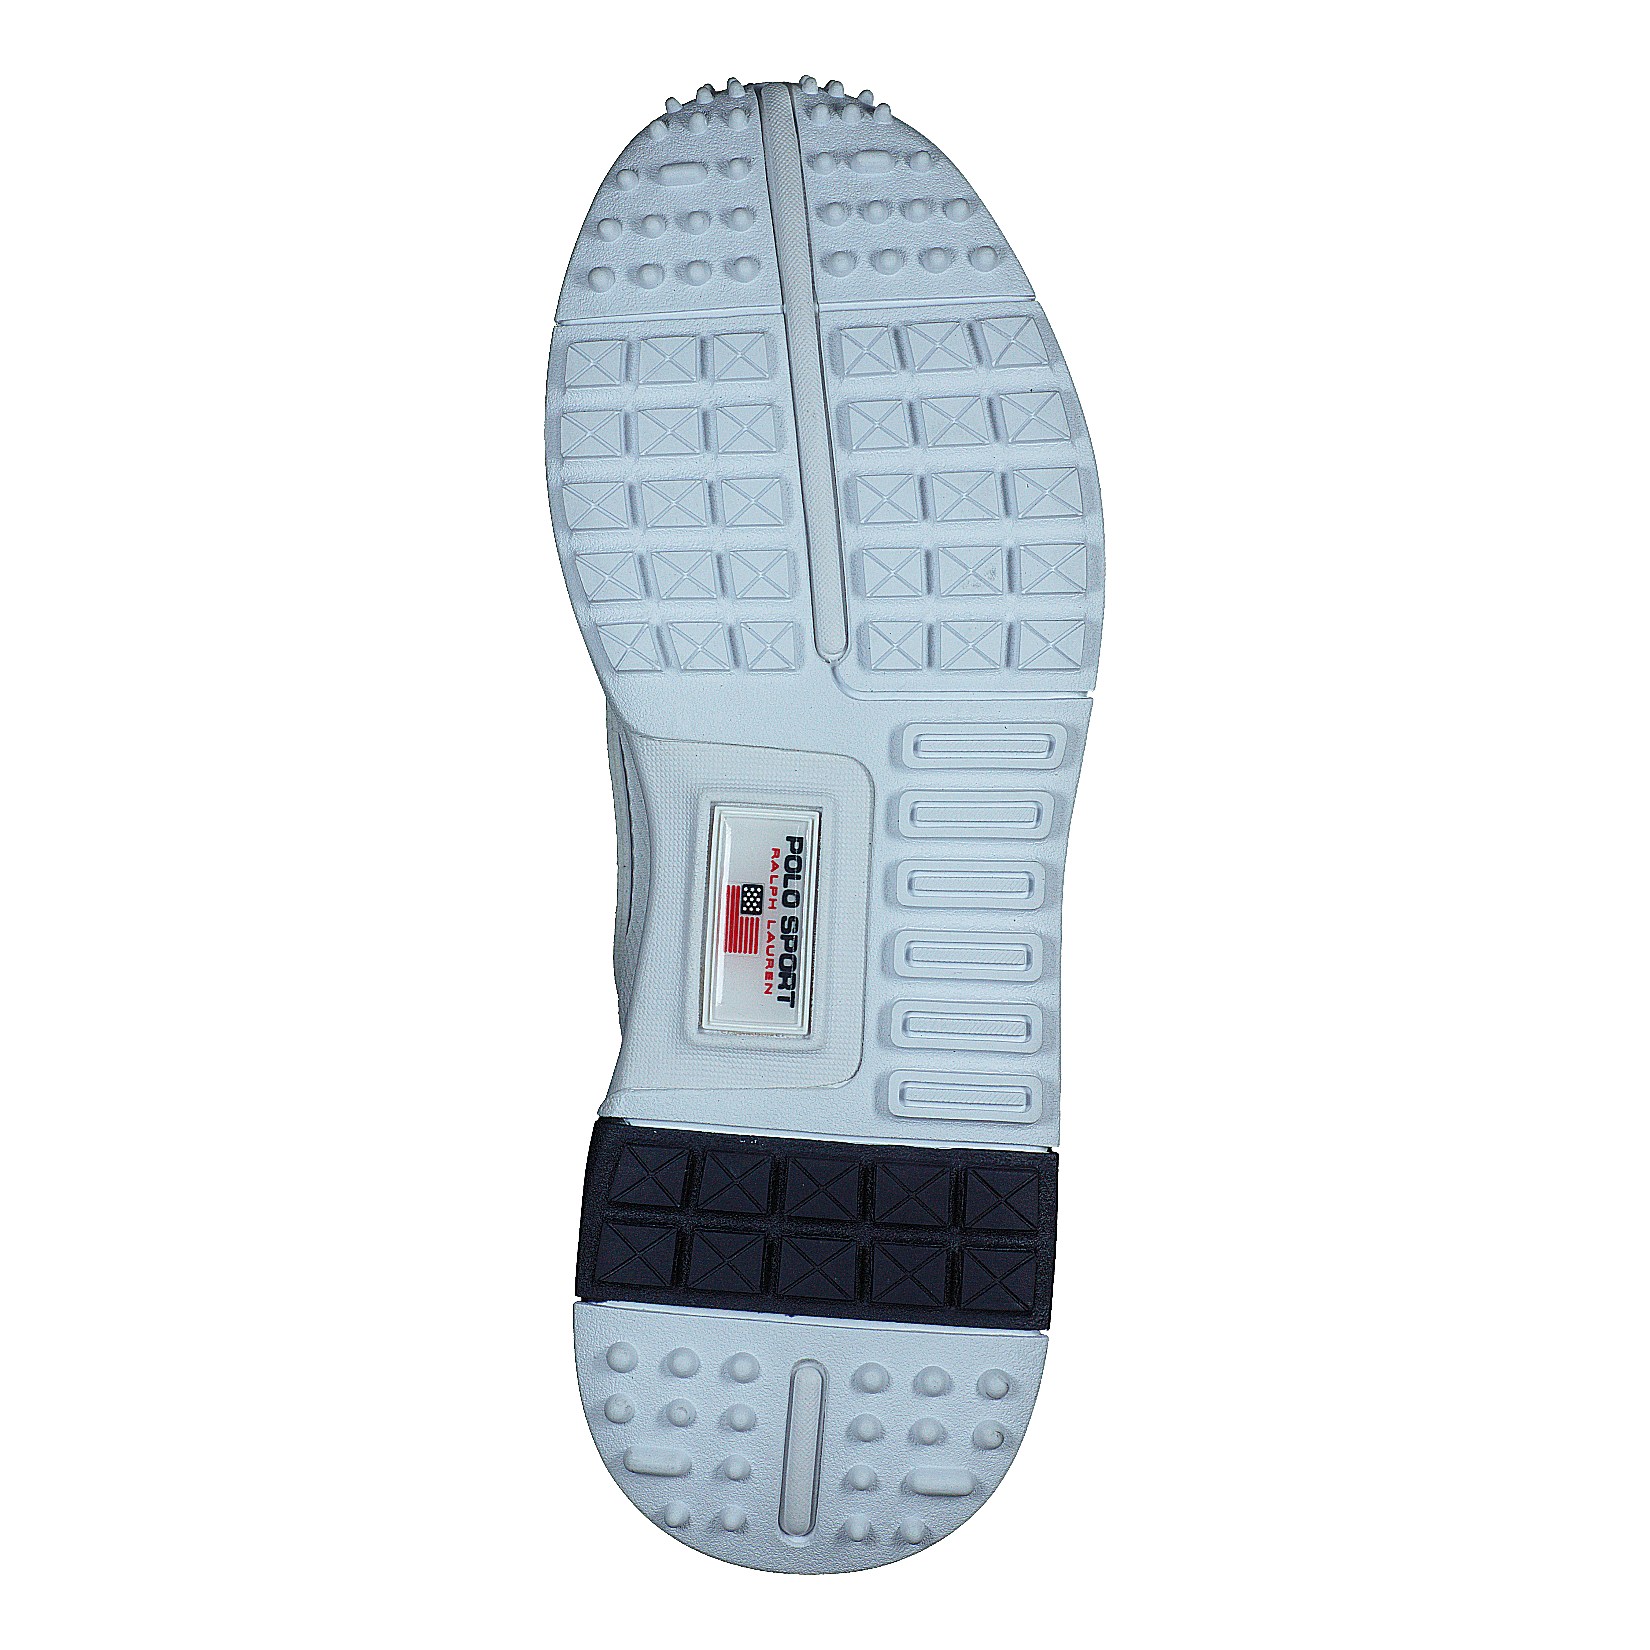 PS200 Sneaker White / Navy / RL2000 Red